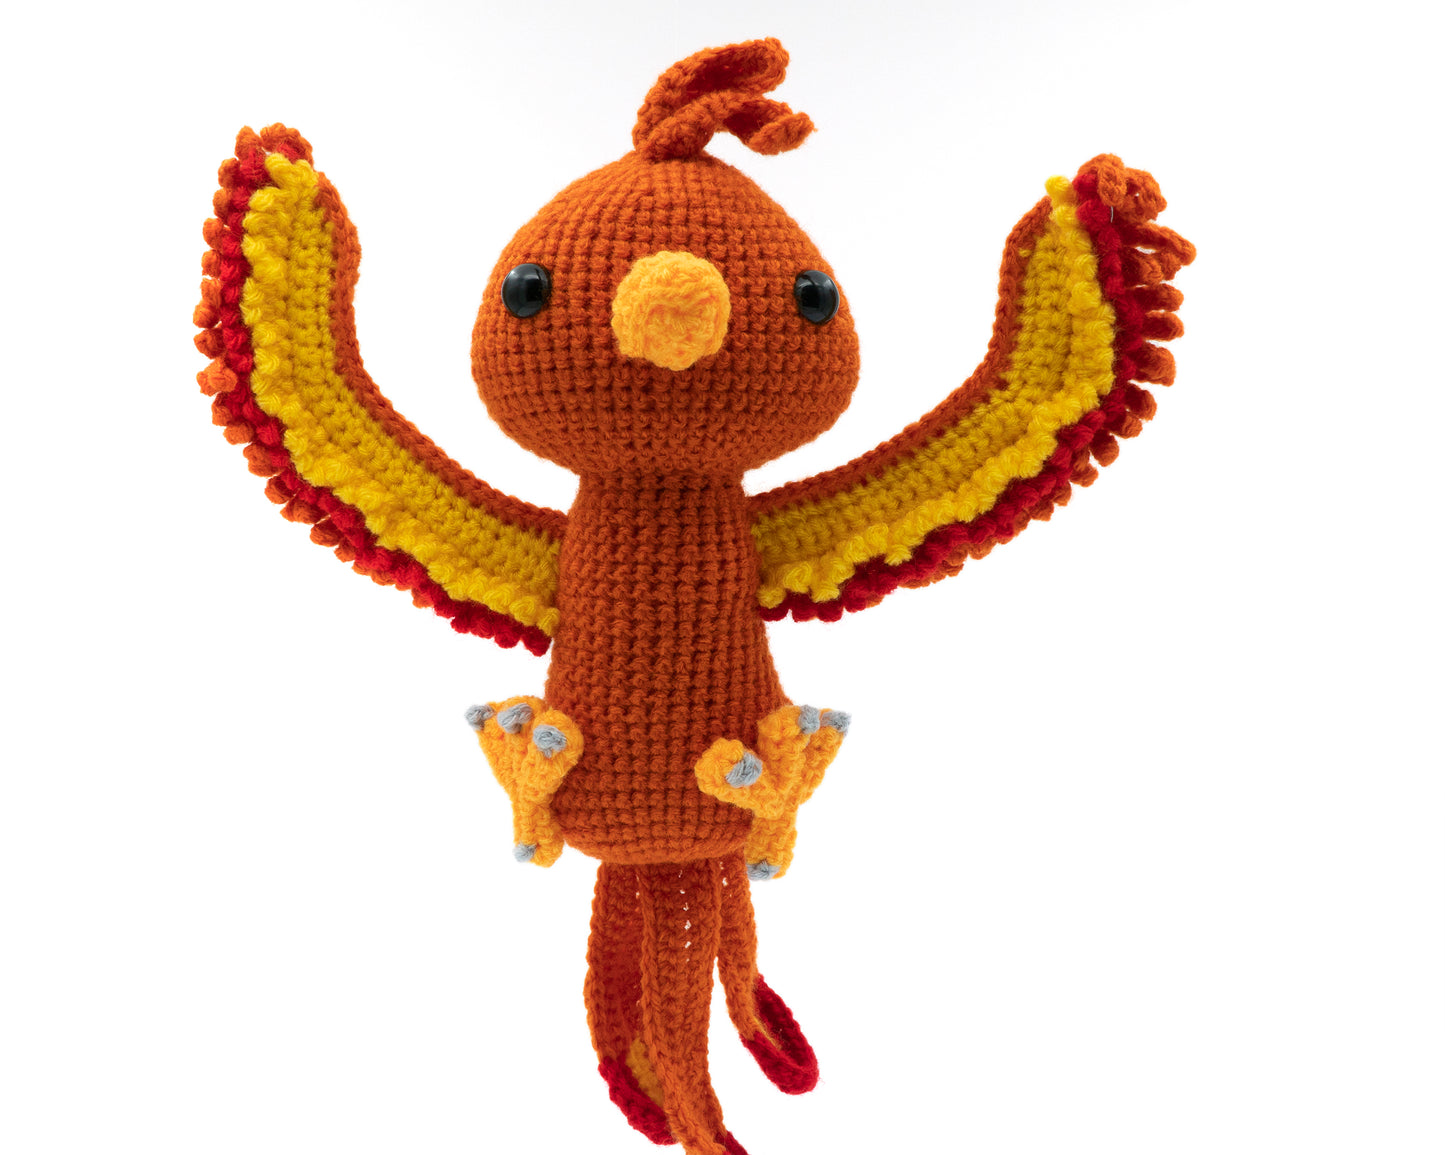 Phoenix Crochet Kit for Beginners